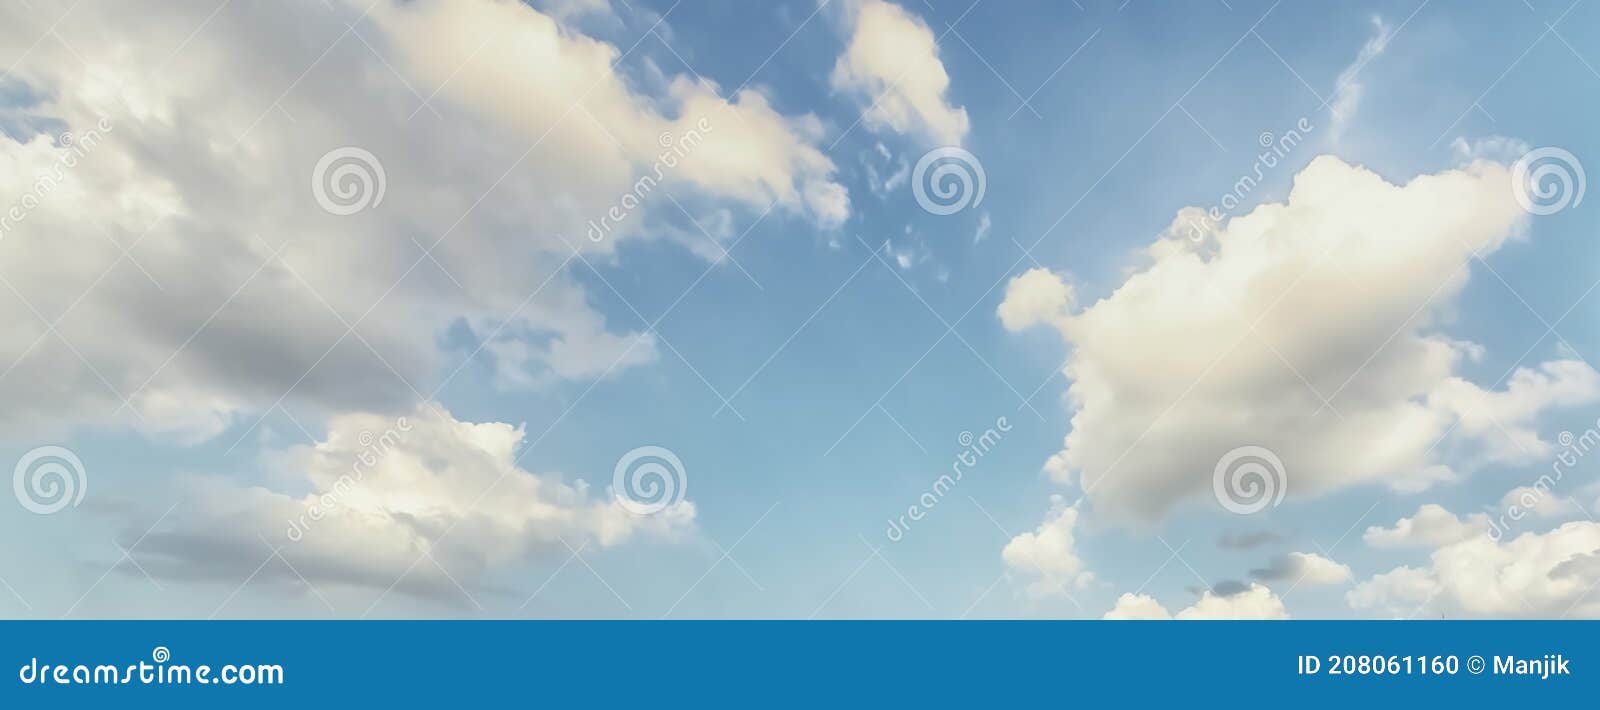 Текстура неба для 3d, представляющих цифровое искусство. Стоковое Фото - изображение насчитывающей среда, иллюстрация: 208061160